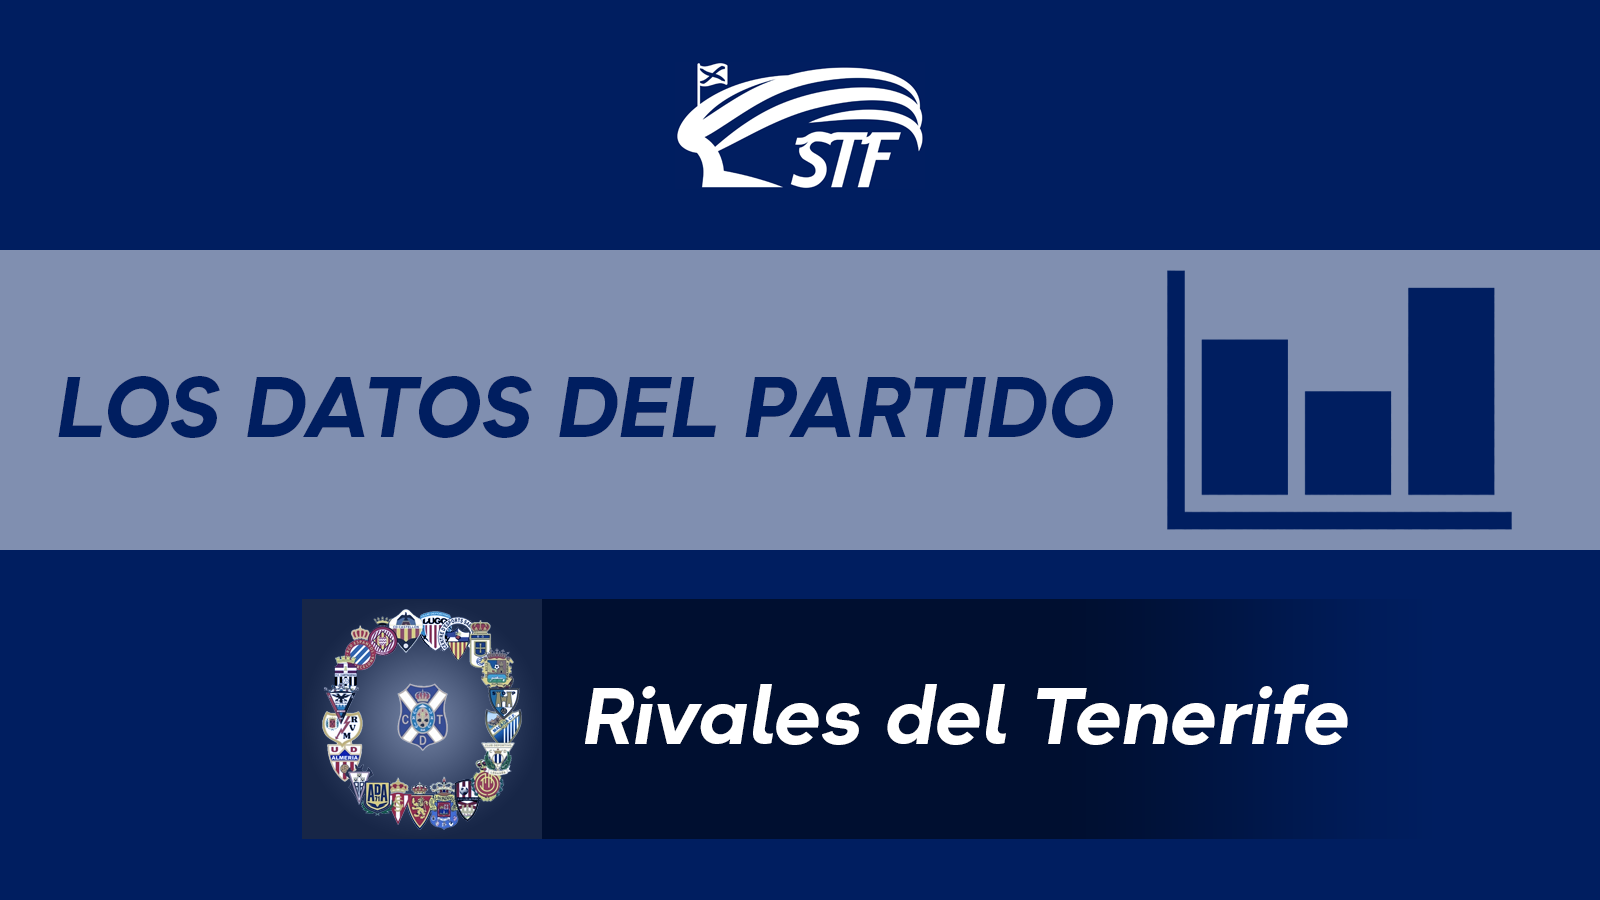 Los datos y curiosidades del CD Tenerife 0-1 Eibar